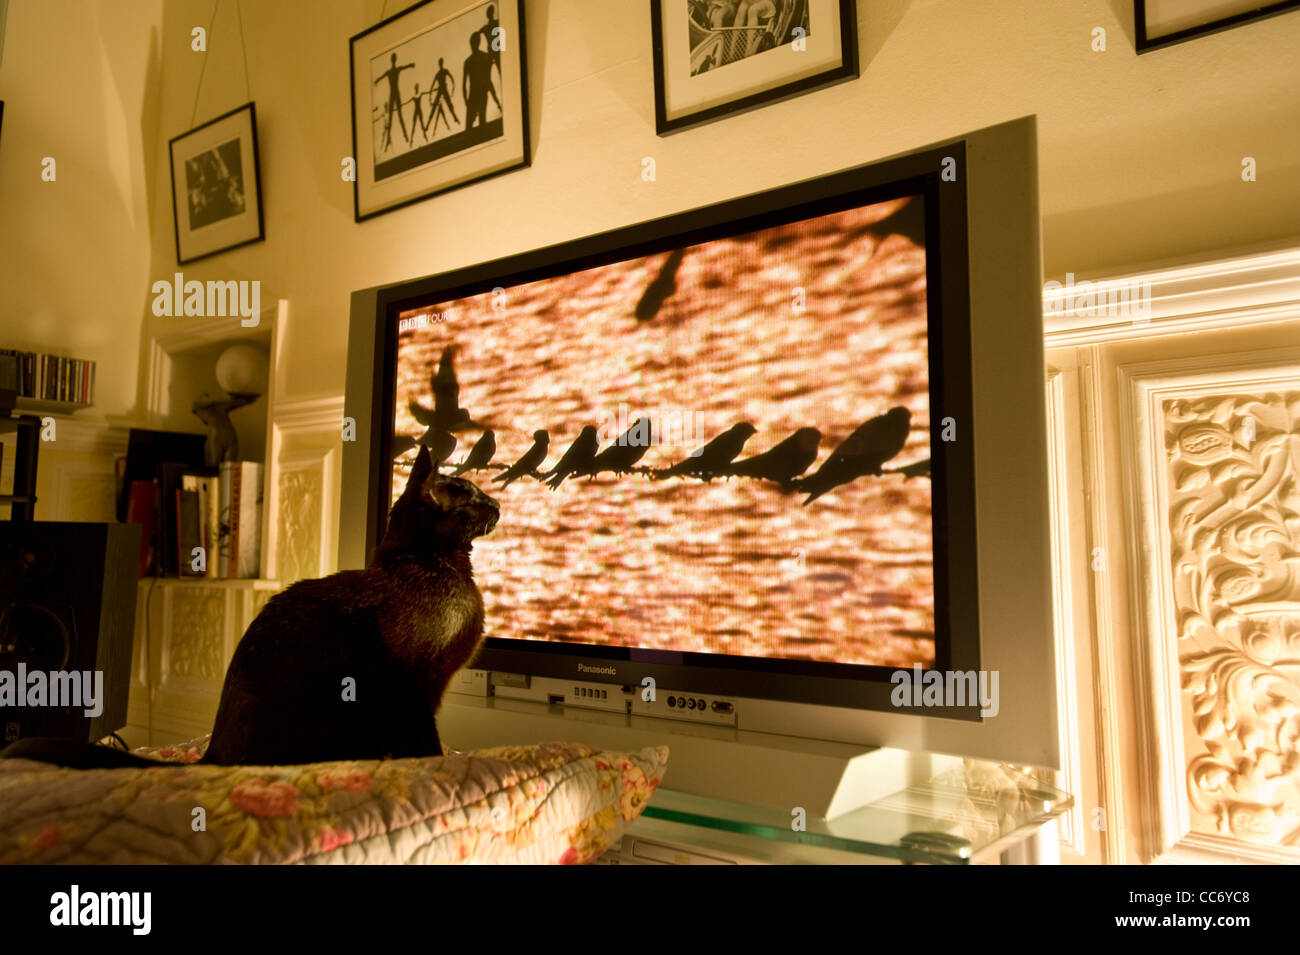 Siamois Chat Noir montres une rangée d'oiseaux ( Hirundines avaler ou maison Martins ) perché sur un fil téléphonique sur un grand écran de télévision plasma Panasonic lors d'un documentaire de la faune Nature Banque D'Images